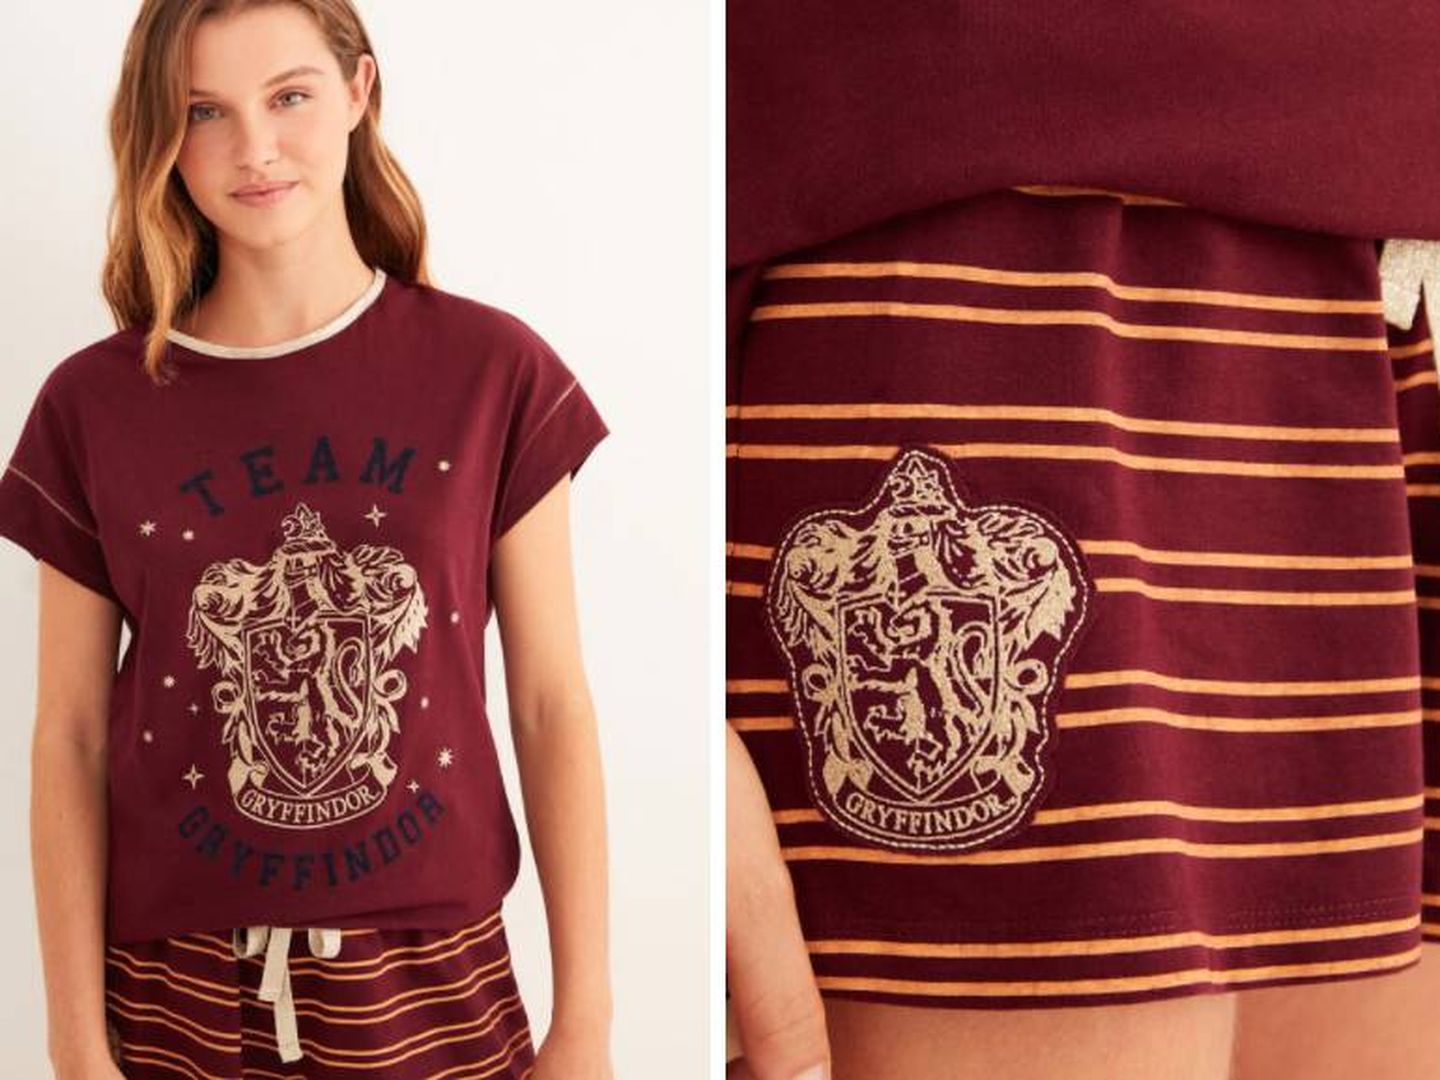 Pijamas largos de Harry Potter de Women'secret. (Cortesía)